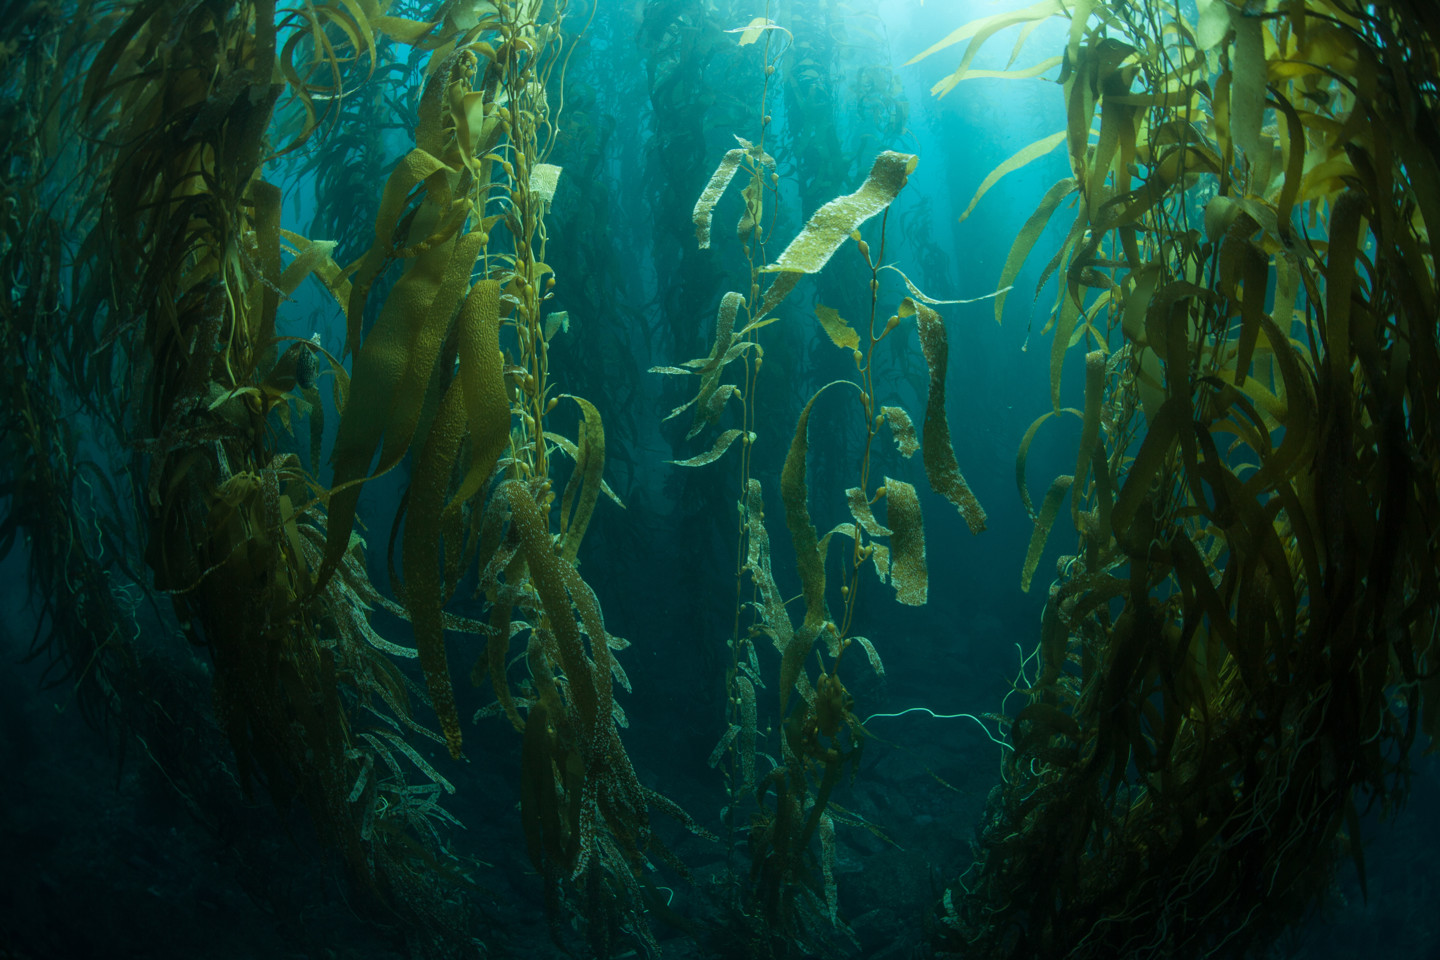 Kelp Image